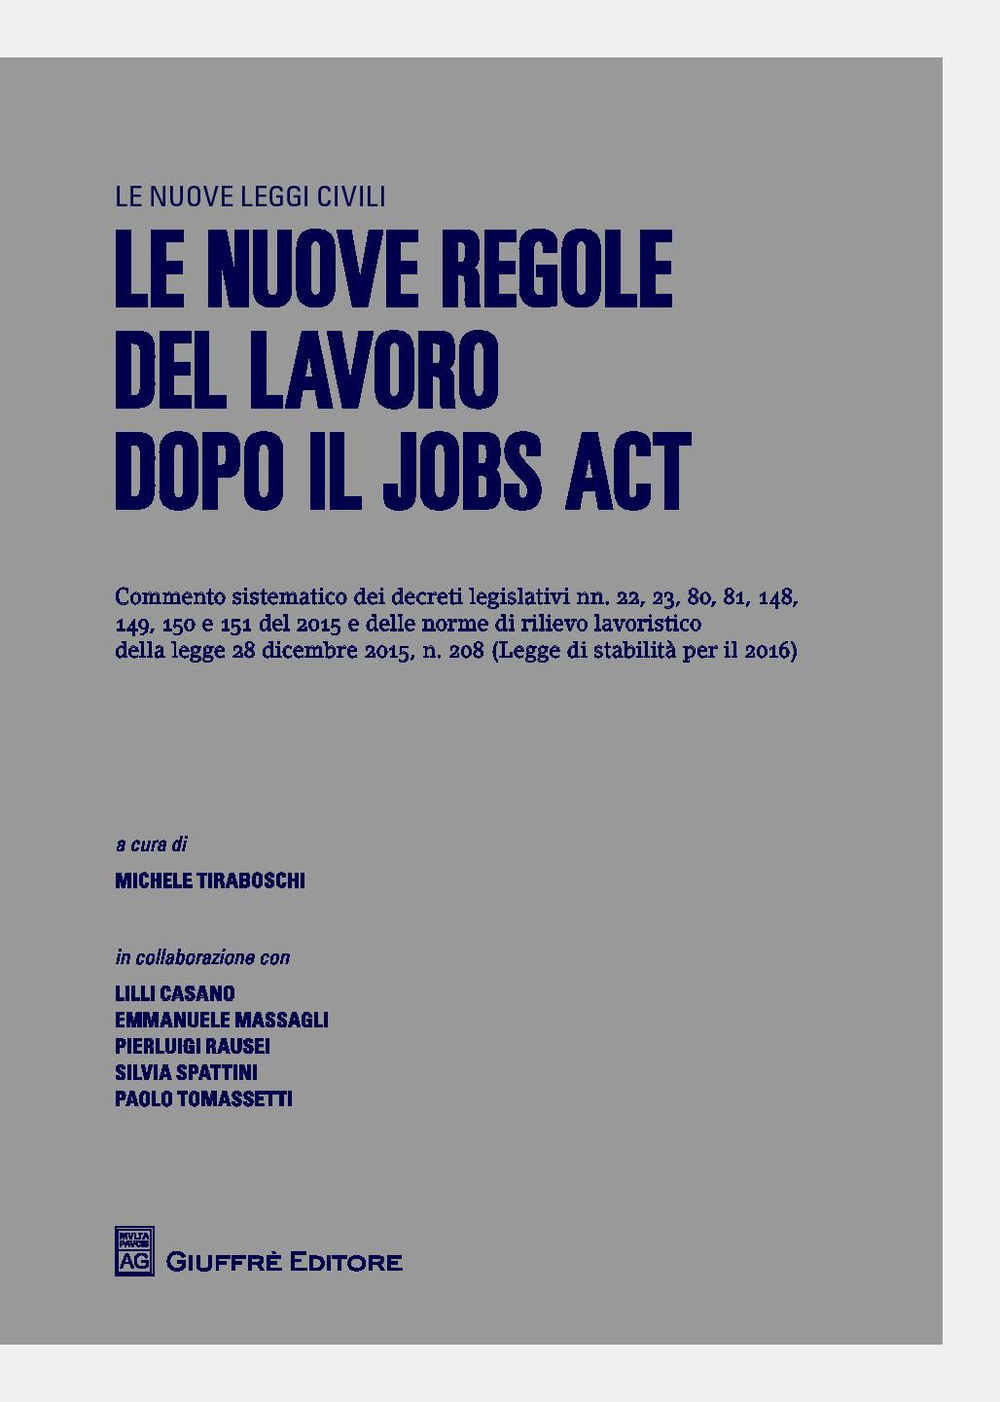 Image of Le nuove regole del lavoro dopo il jobs act